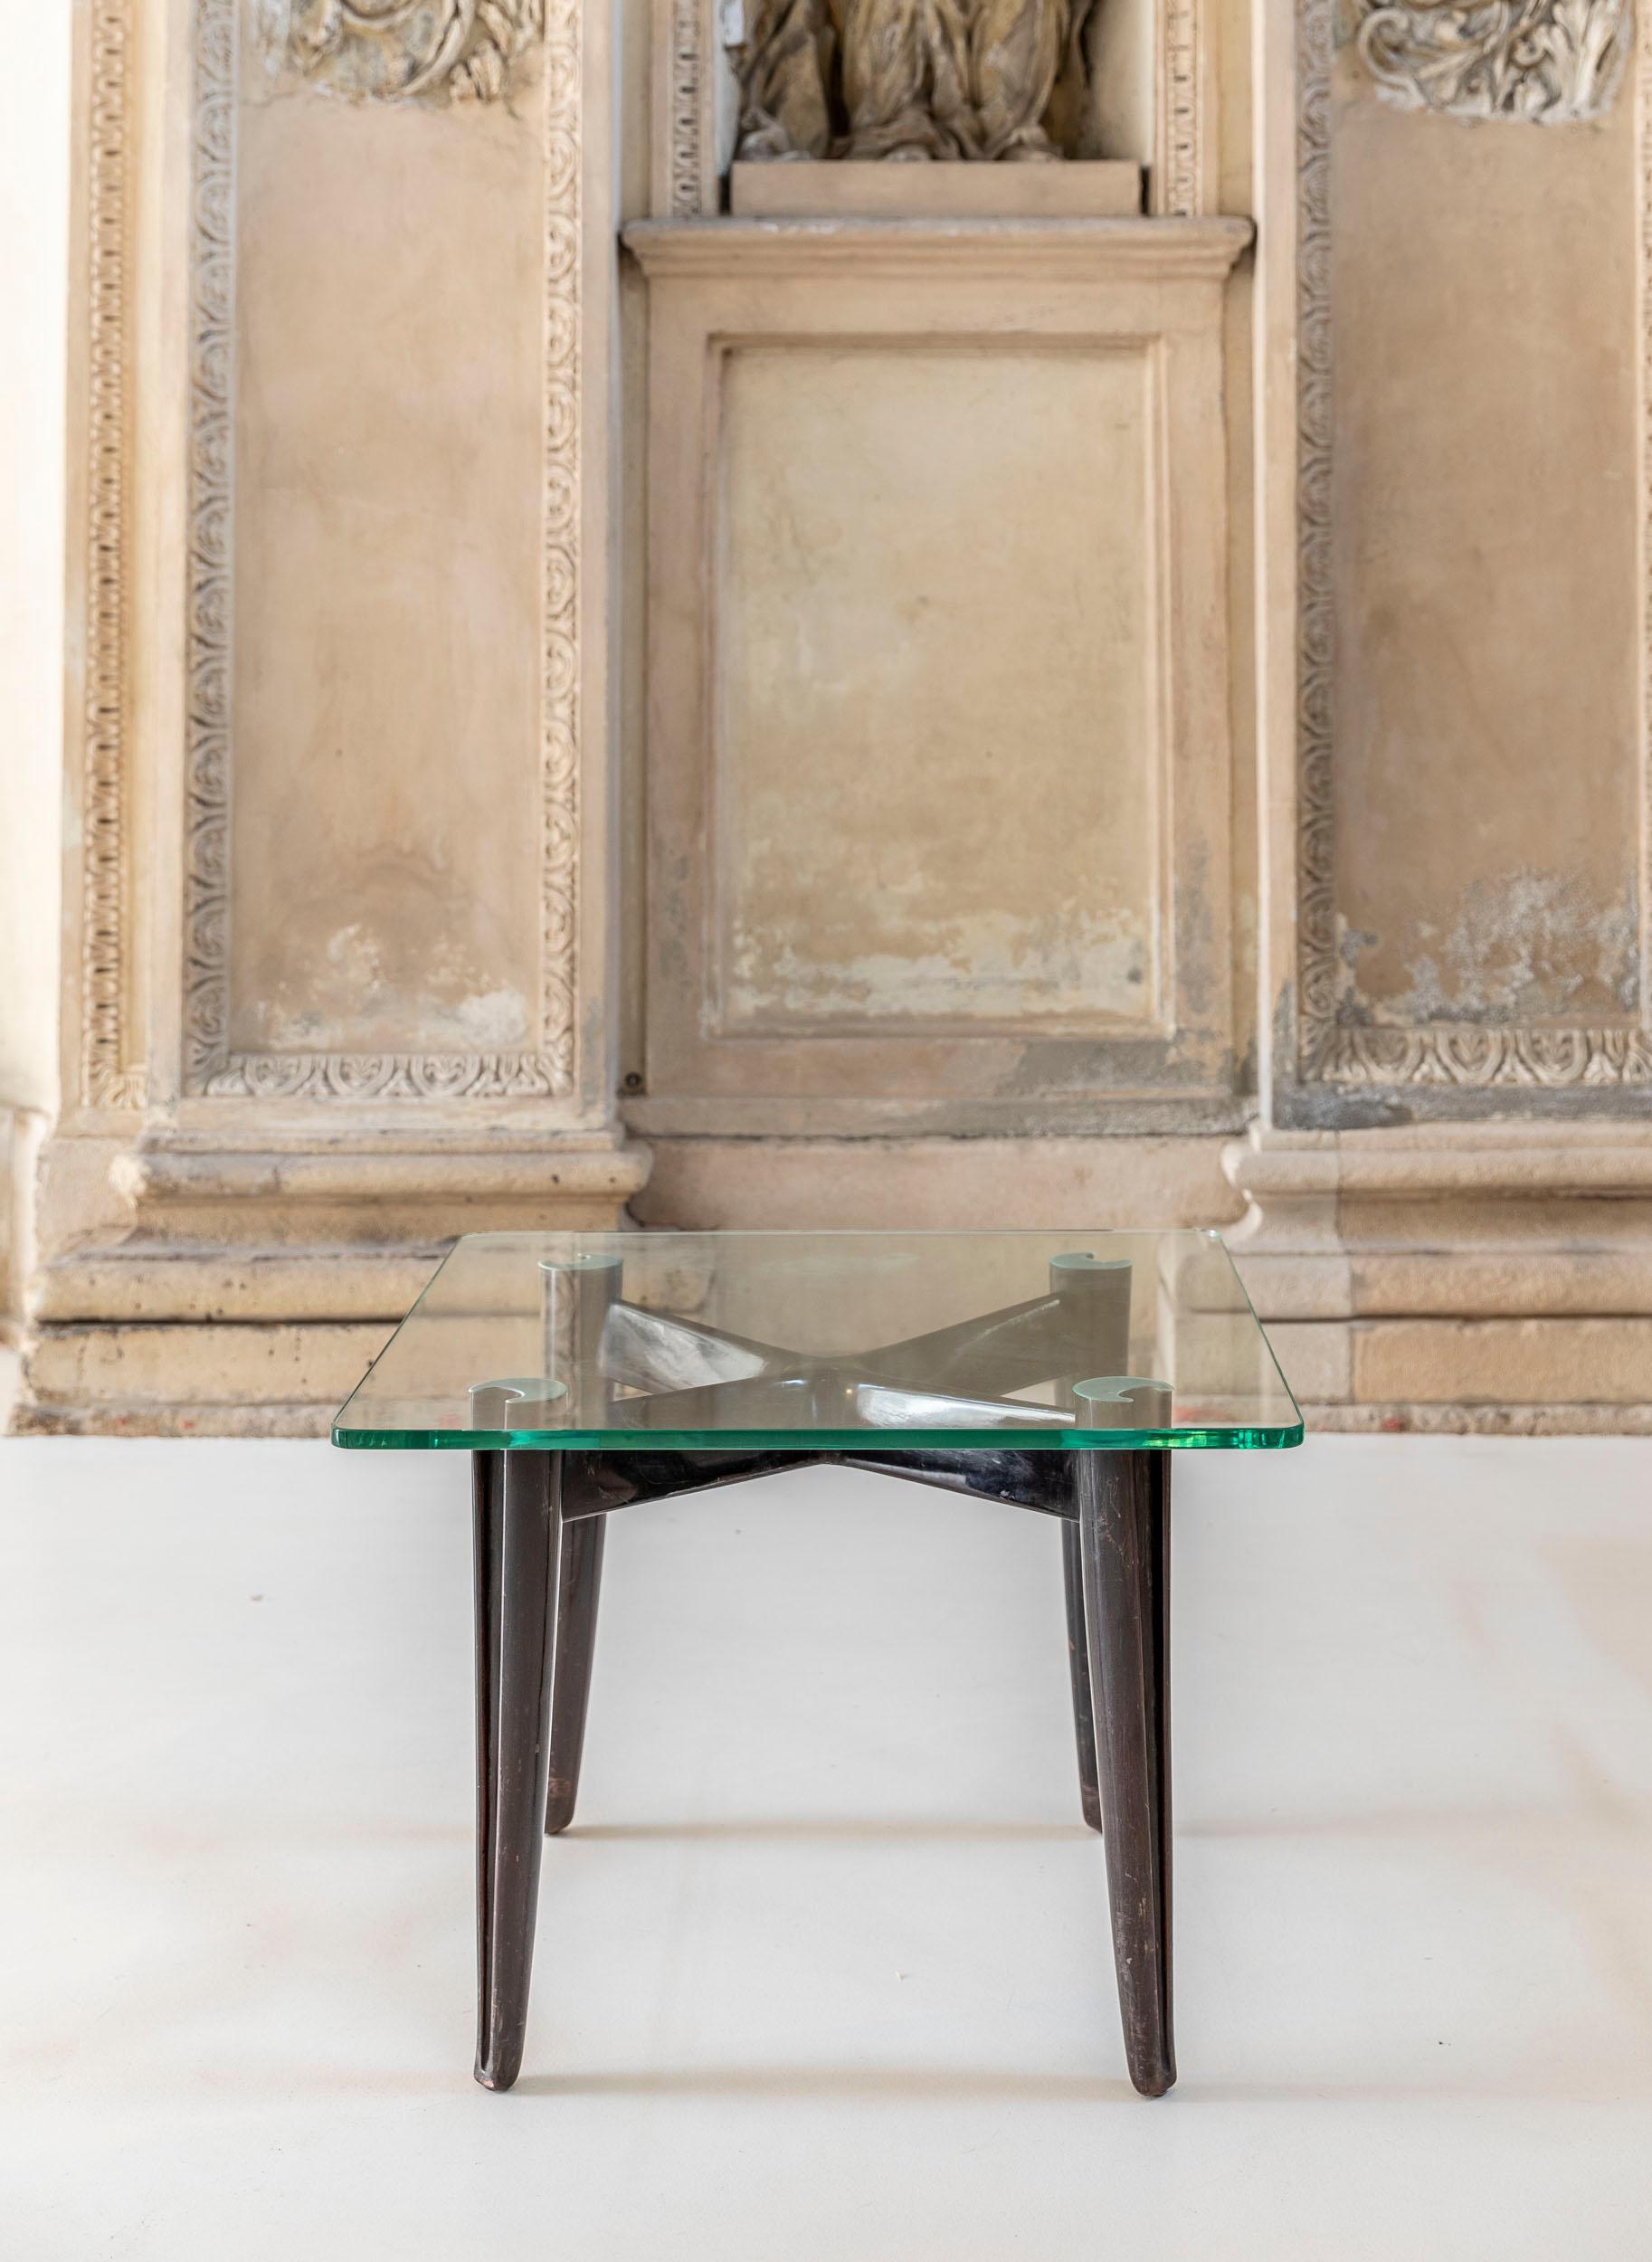 
Die Holzstruktur mit vier Beinen hat die ikonische spitz zulaufende Form mit gekreuztem Design von Osvaldo Borsani. Die ursprüngliche Platte ist ein dickes Klarglas in ausgezeichnetem Zustand.
 